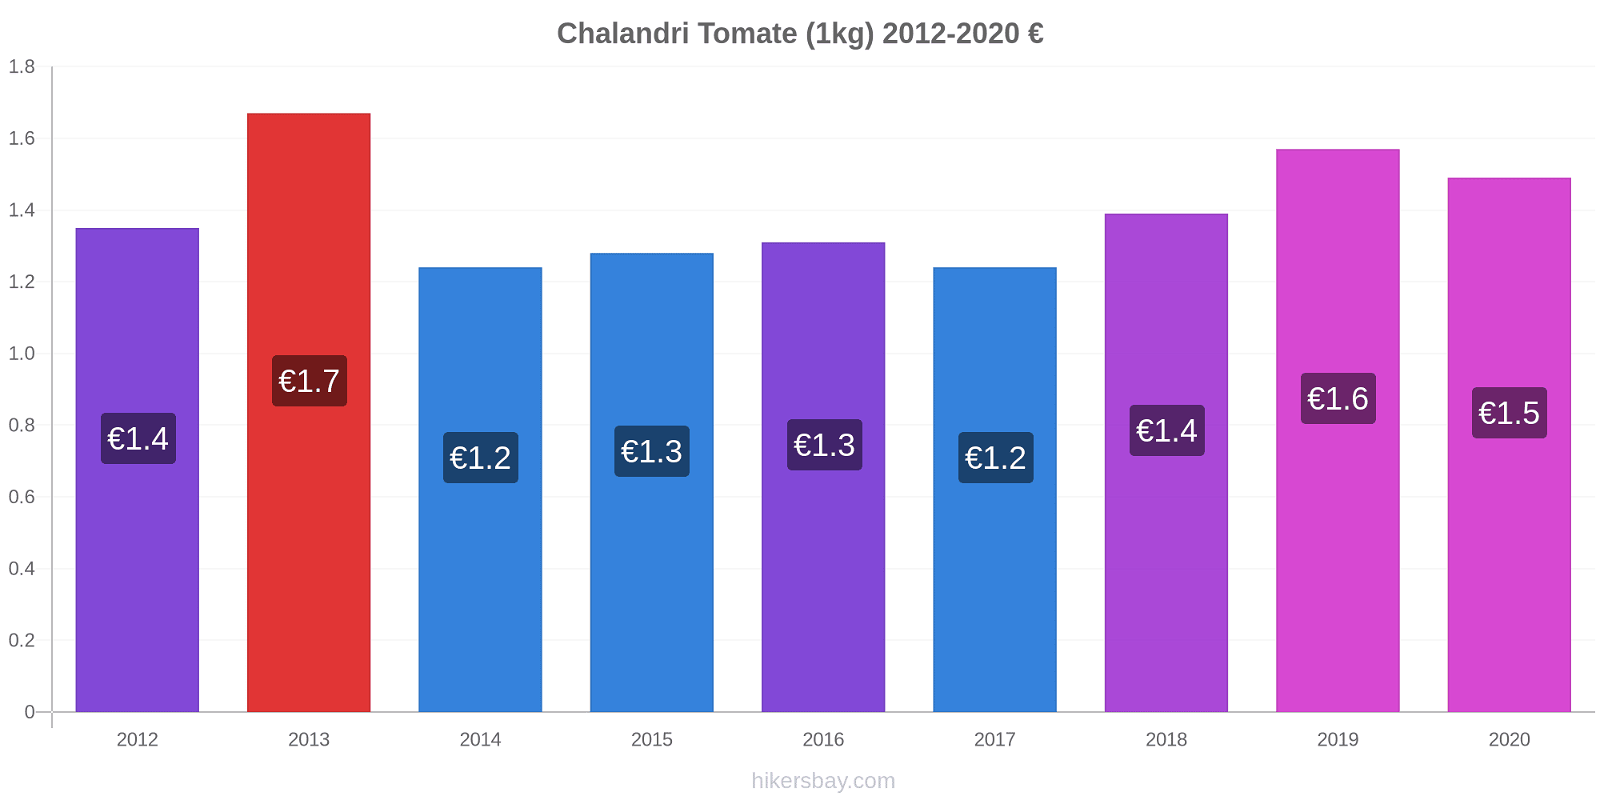 Chalandri cambios de precios Tomate (1kg) hikersbay.com